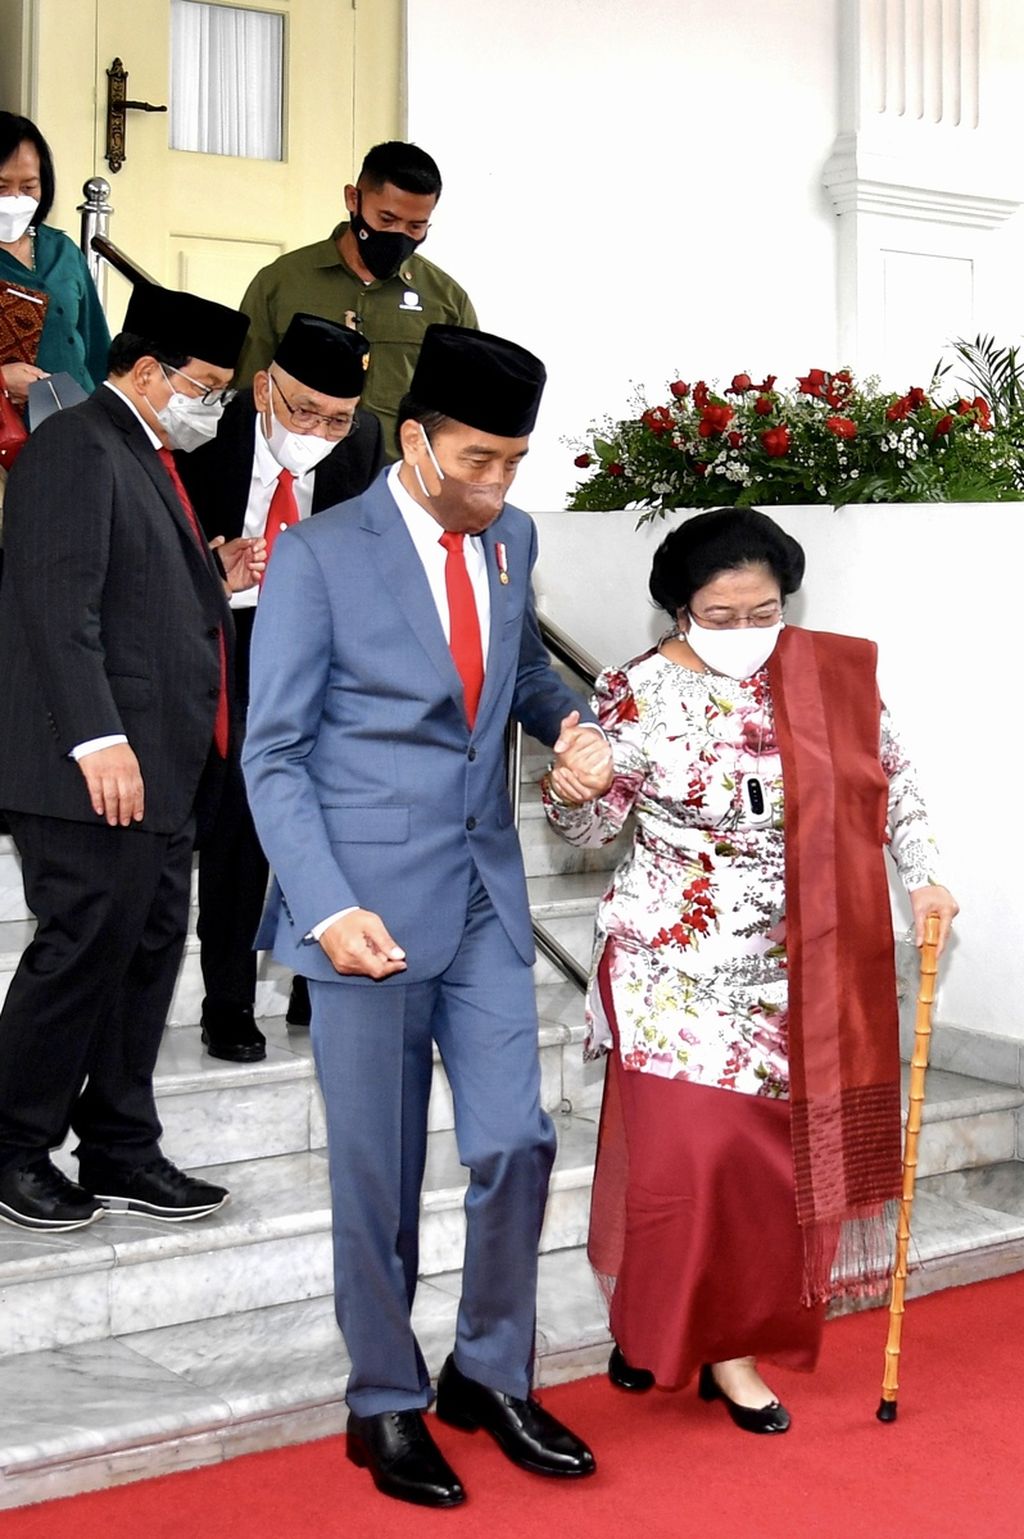 Presiden Joko Widodo menggandeng tangan Ketua Umum PDI-P Megawati Soekarnoputri saat mengantarkan ke mobilnya setelah pelantikan Megawati sebagai Ketua Dewan Pengarah Badan Pembinaan Ideologi Pancasila 2022-2027 di Istana Negara, Jakarta, Selasa (7/6/2022). Selain Megawati, dilantik pula anggota Dewan Pengarah BPIP lainnya serta Kepala dan Wakil Kepala BPIP.